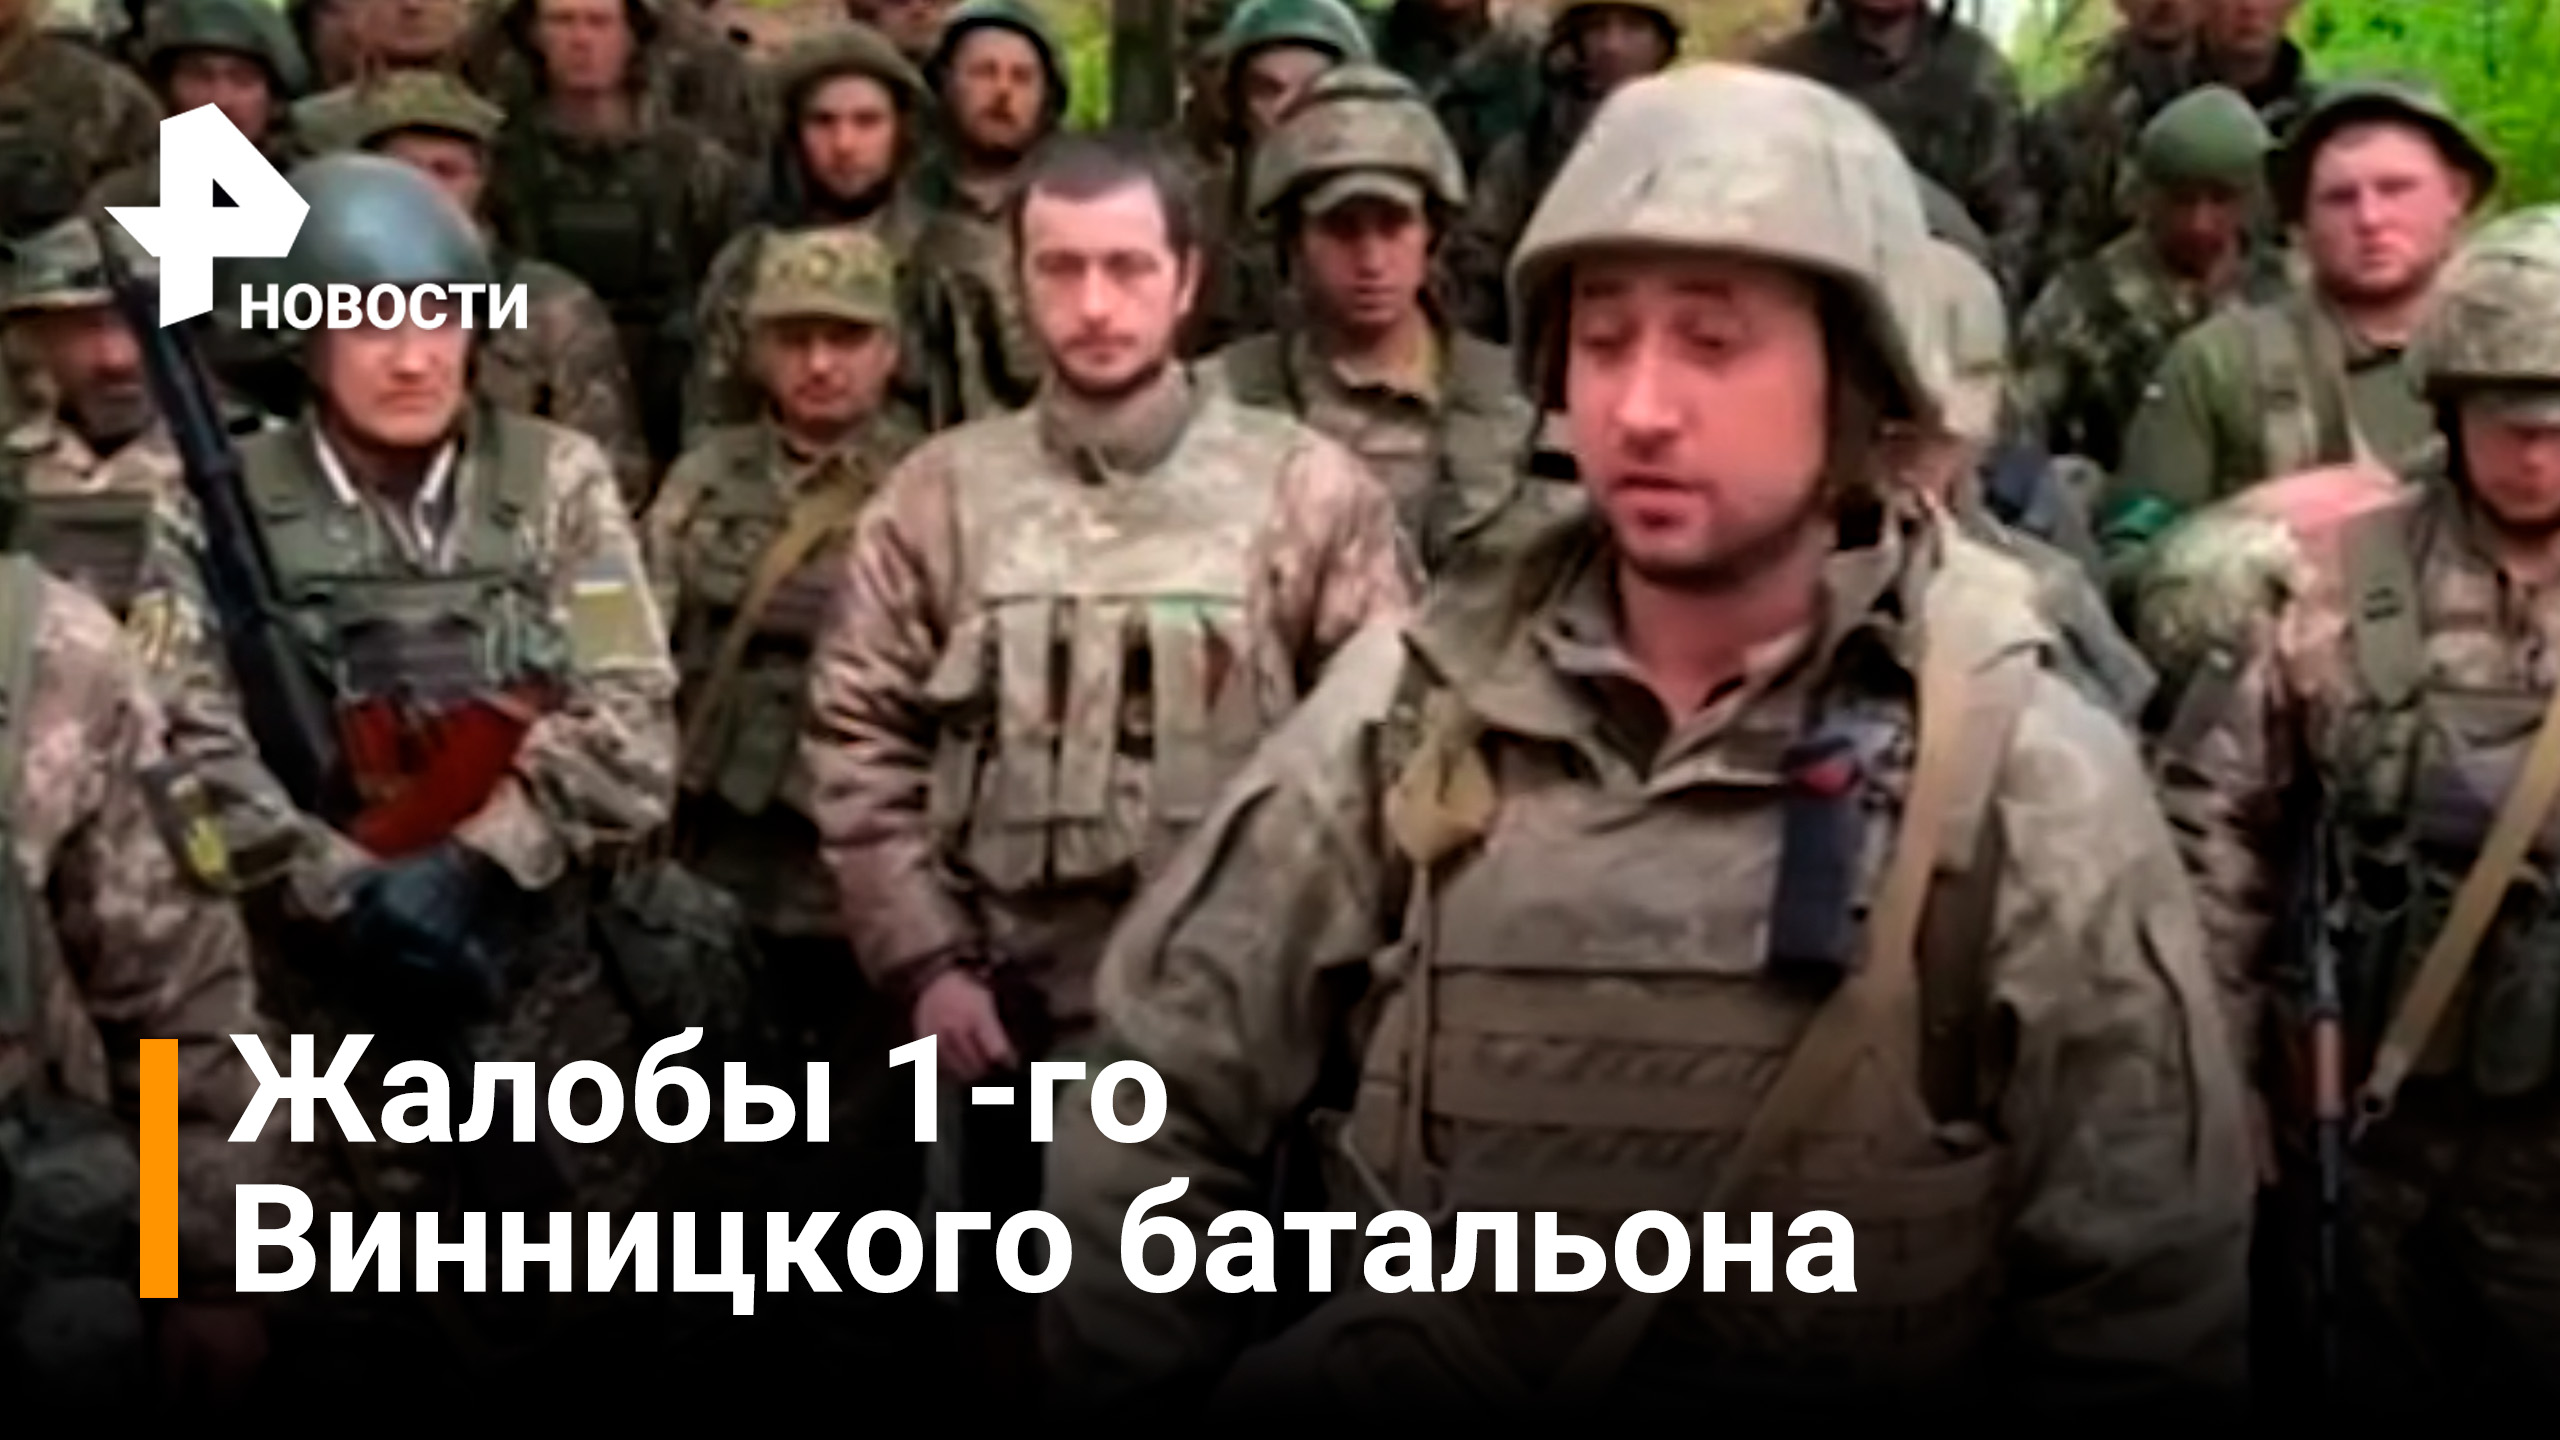 Гнилые «броники», передовая вместо арьергарда - бойцы ВСУ жалуются на командование / РЕН Новости